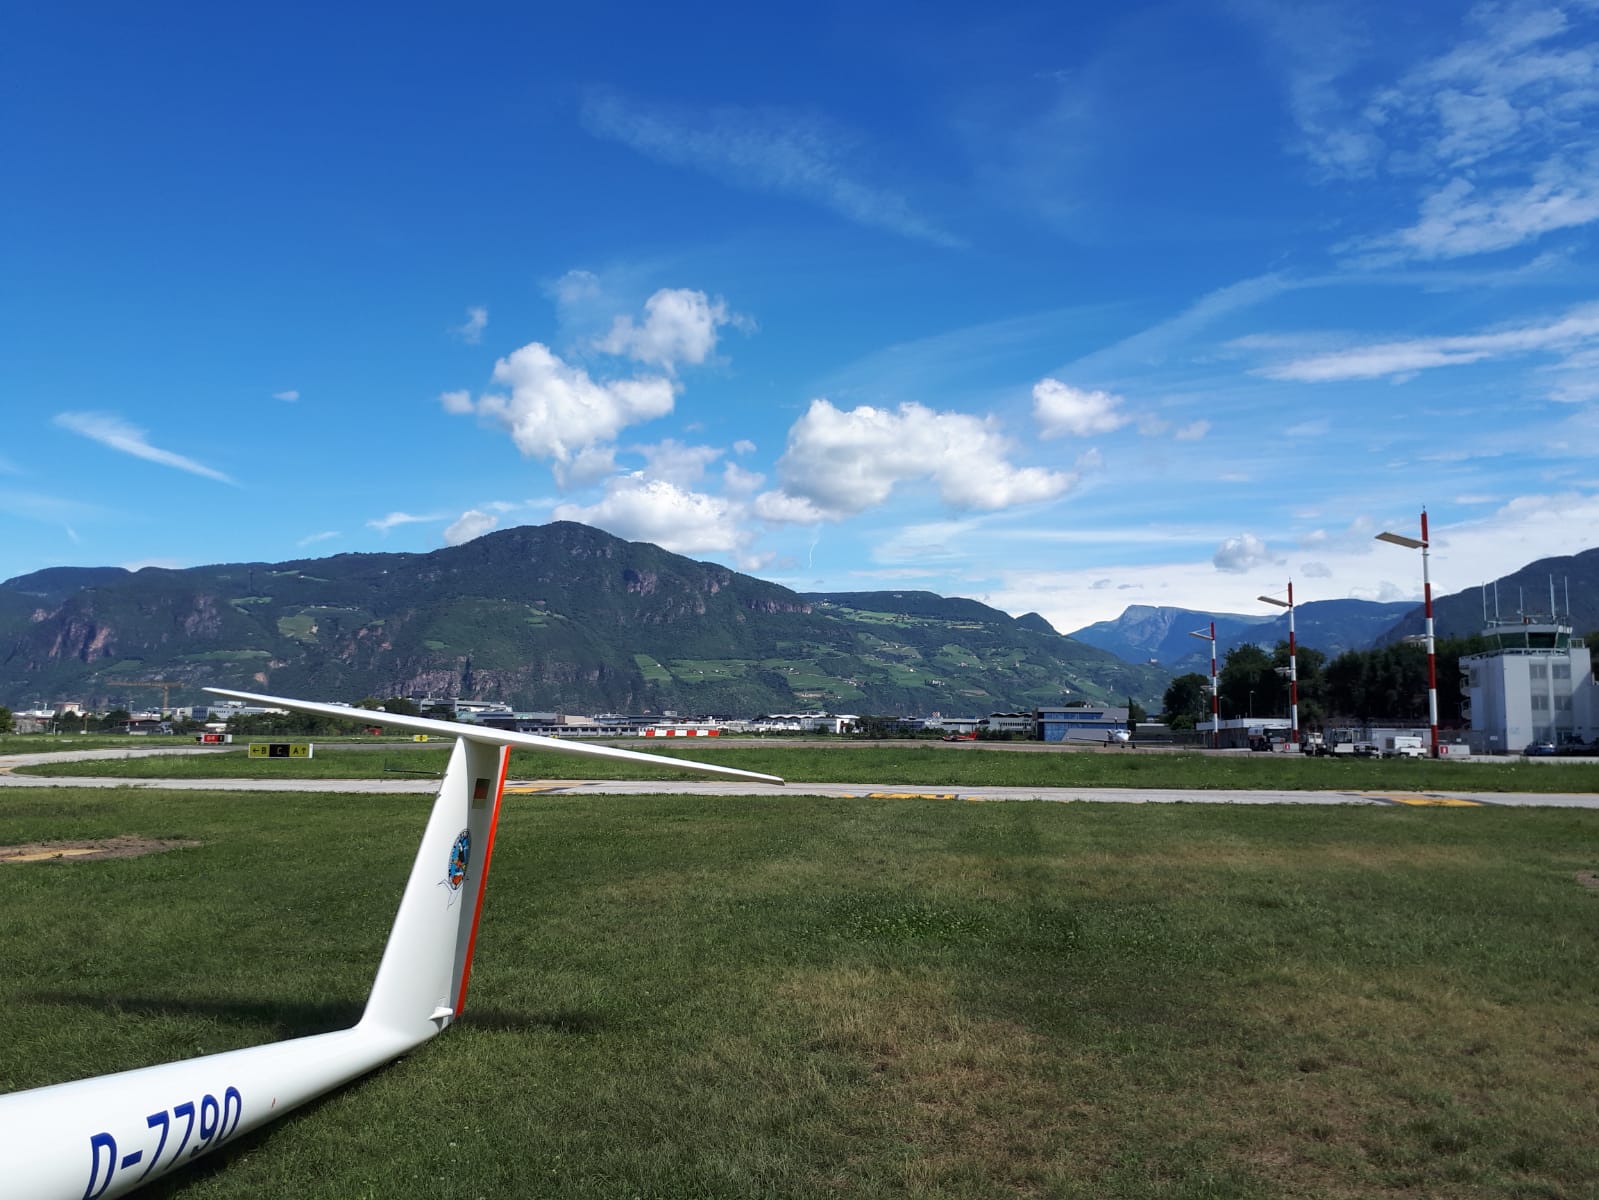 Aeroporto Bolzano